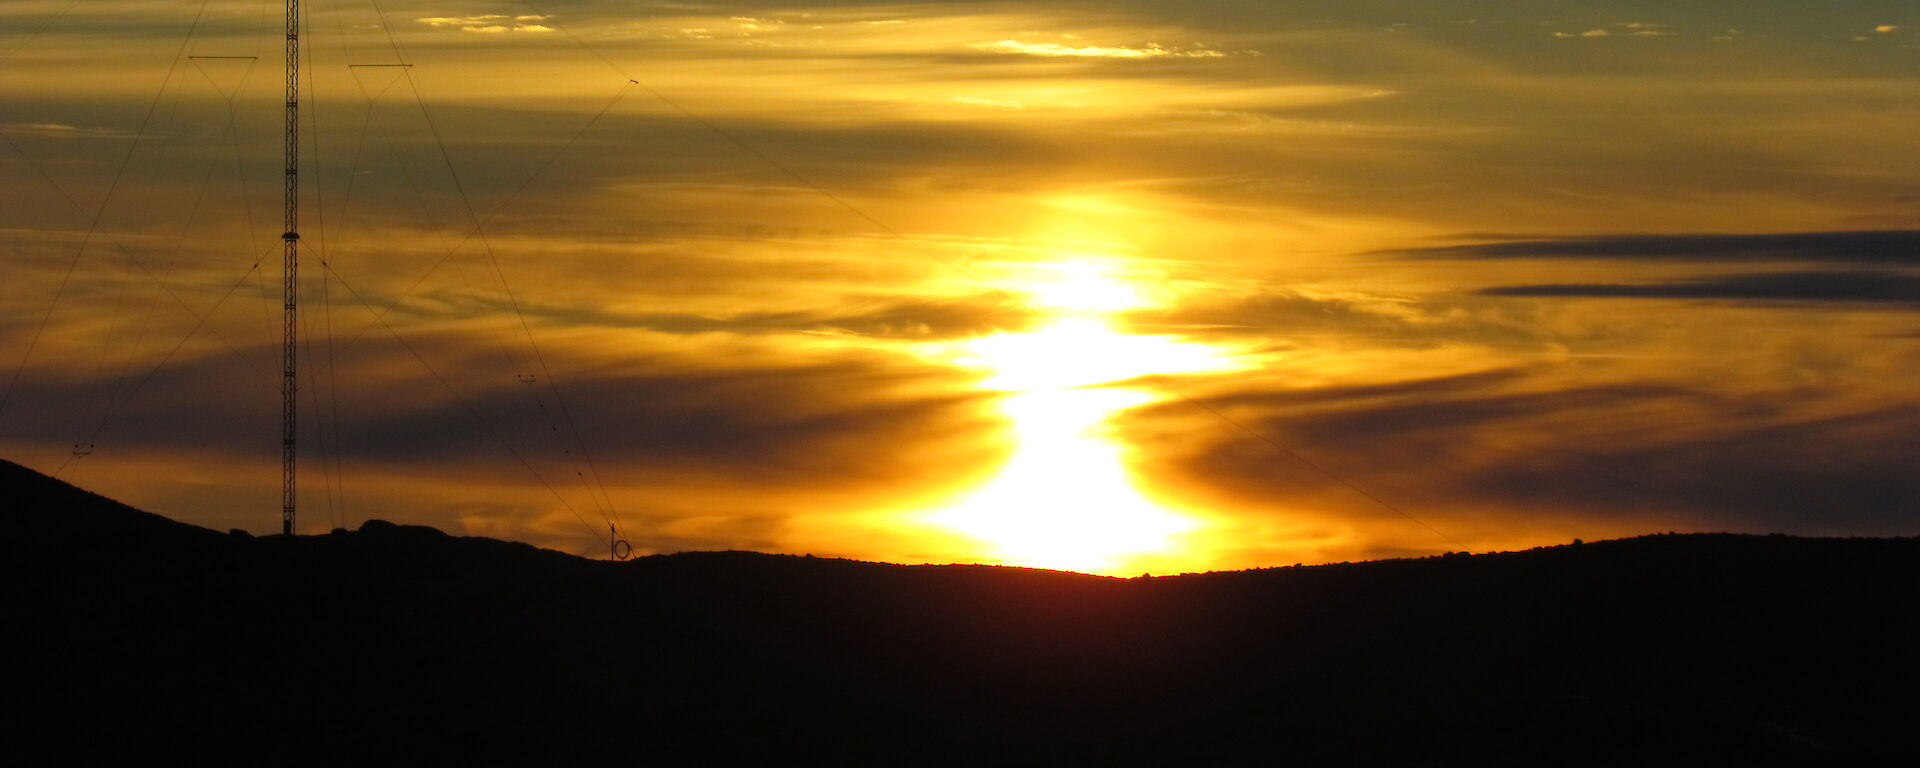 Sunset in November — Davis 2011